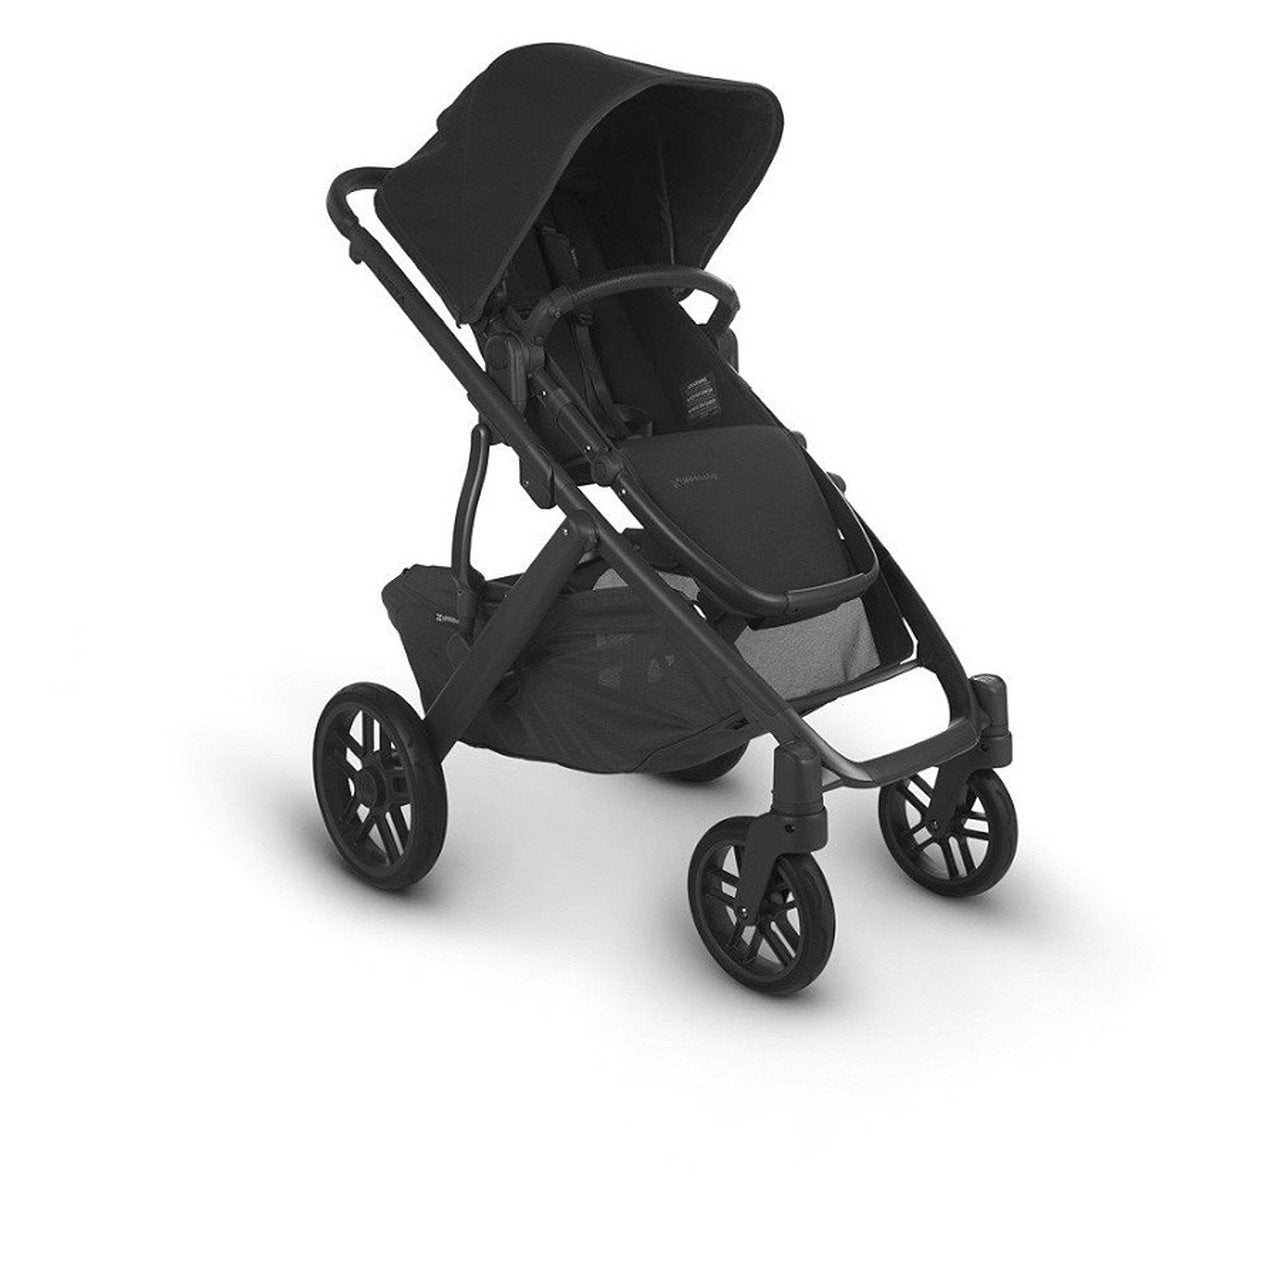 UPPAbaby stroller UPPAbaby VISTA V2 Stroller - Jake (Black/Carbon/Black Leather)